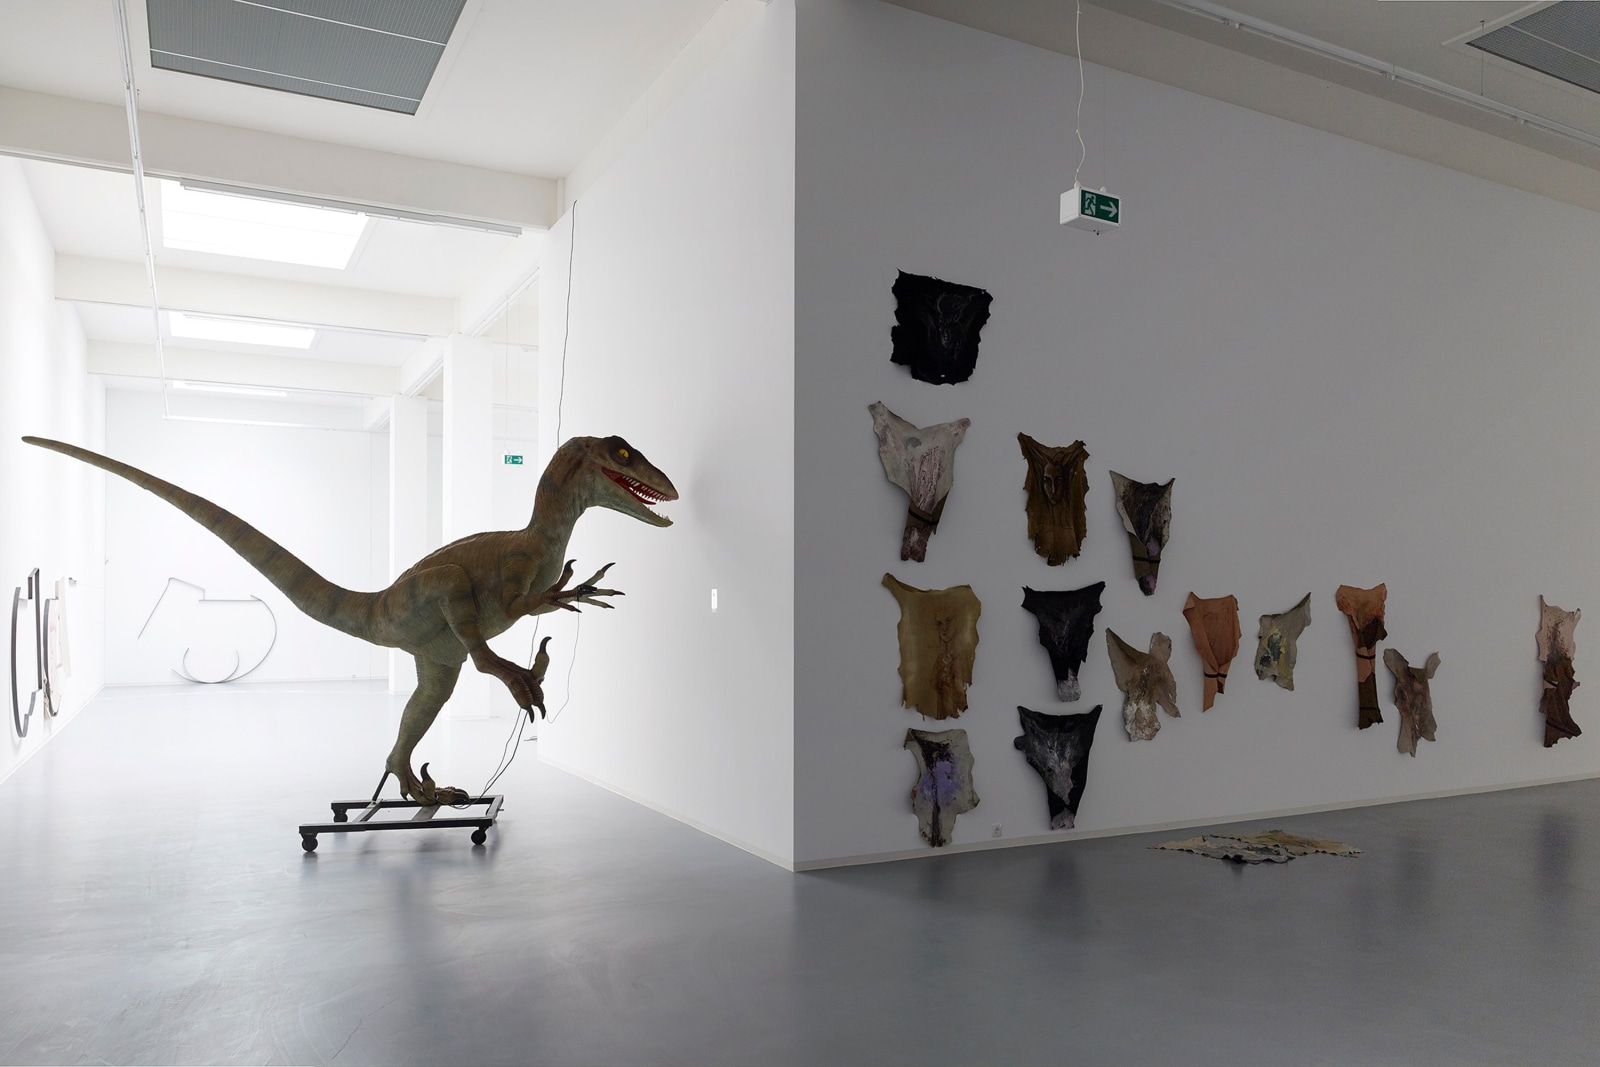 Installation view,&nbsp;Raphaela und der gro&szlig;e Kunstverein, Bonner Kunstverein, Bonn, 2015.&nbsp;Photo: Simon Vogel, Cologne.